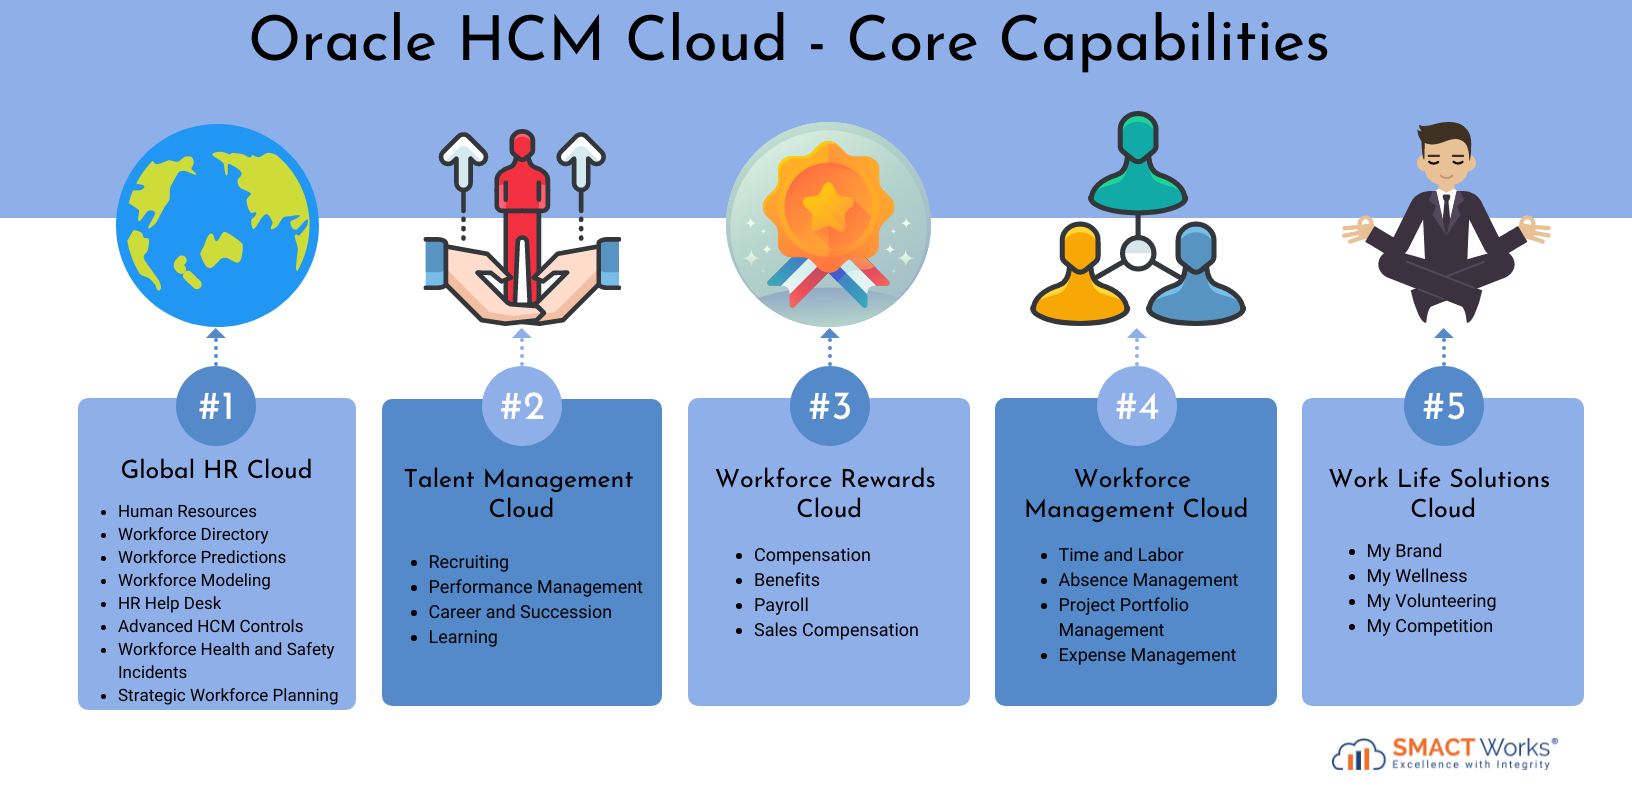 Oracle HCM Cloud Capabilities: Global HR Cloud, Talent Management, Workforce Rewards & Management Cloud & Worklife Solutions